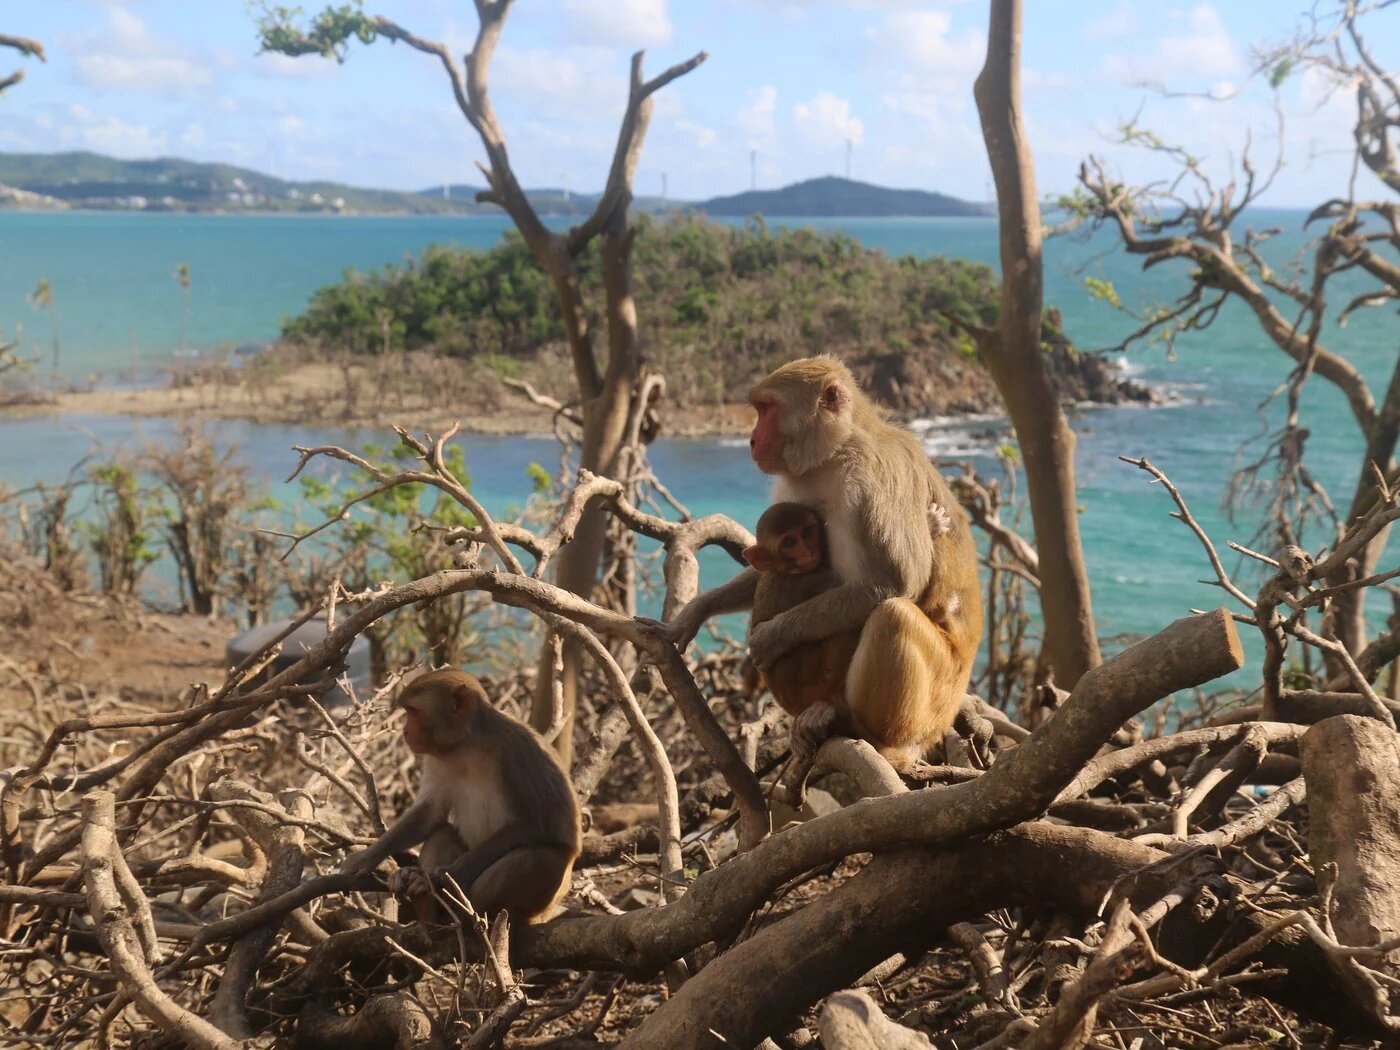 Кайо-Сантьяго: Карибский остров обезьян